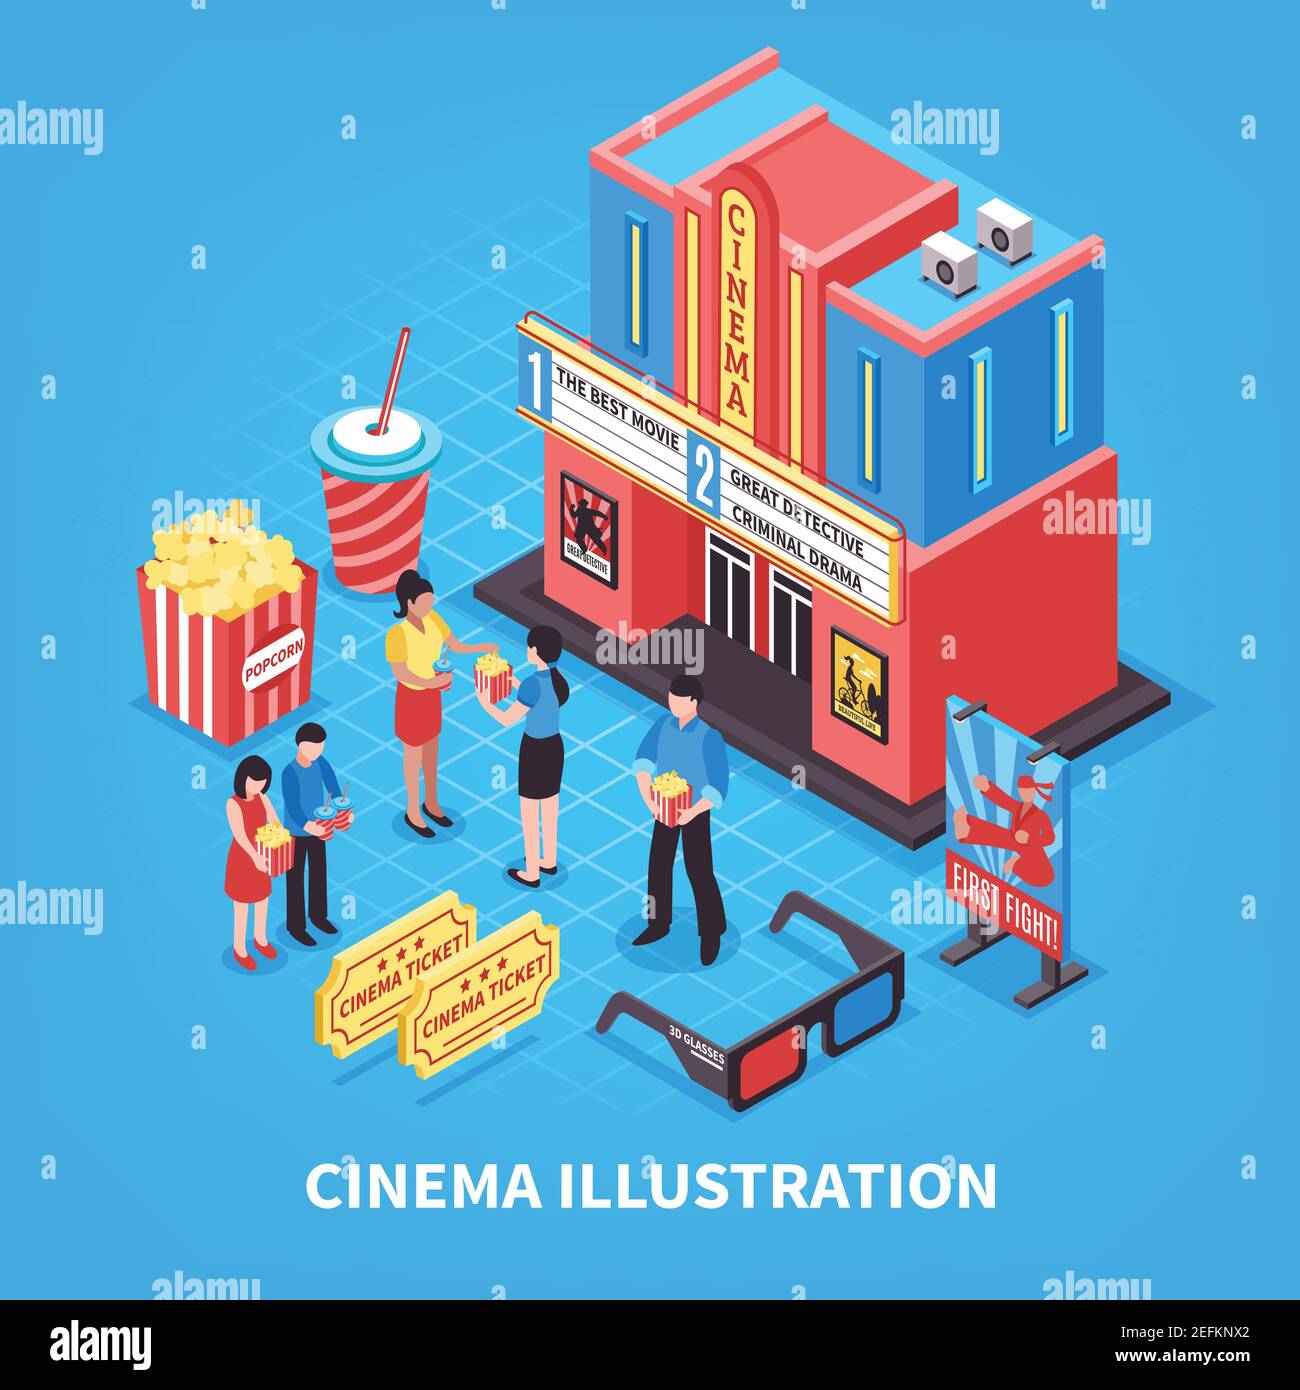 Concept de conception isométrique de la cinématographie avec billets de cinéma lunettes 3d et les personnes à proximité de l'illustration vectorielle du théâtre Illustration de Vecteur